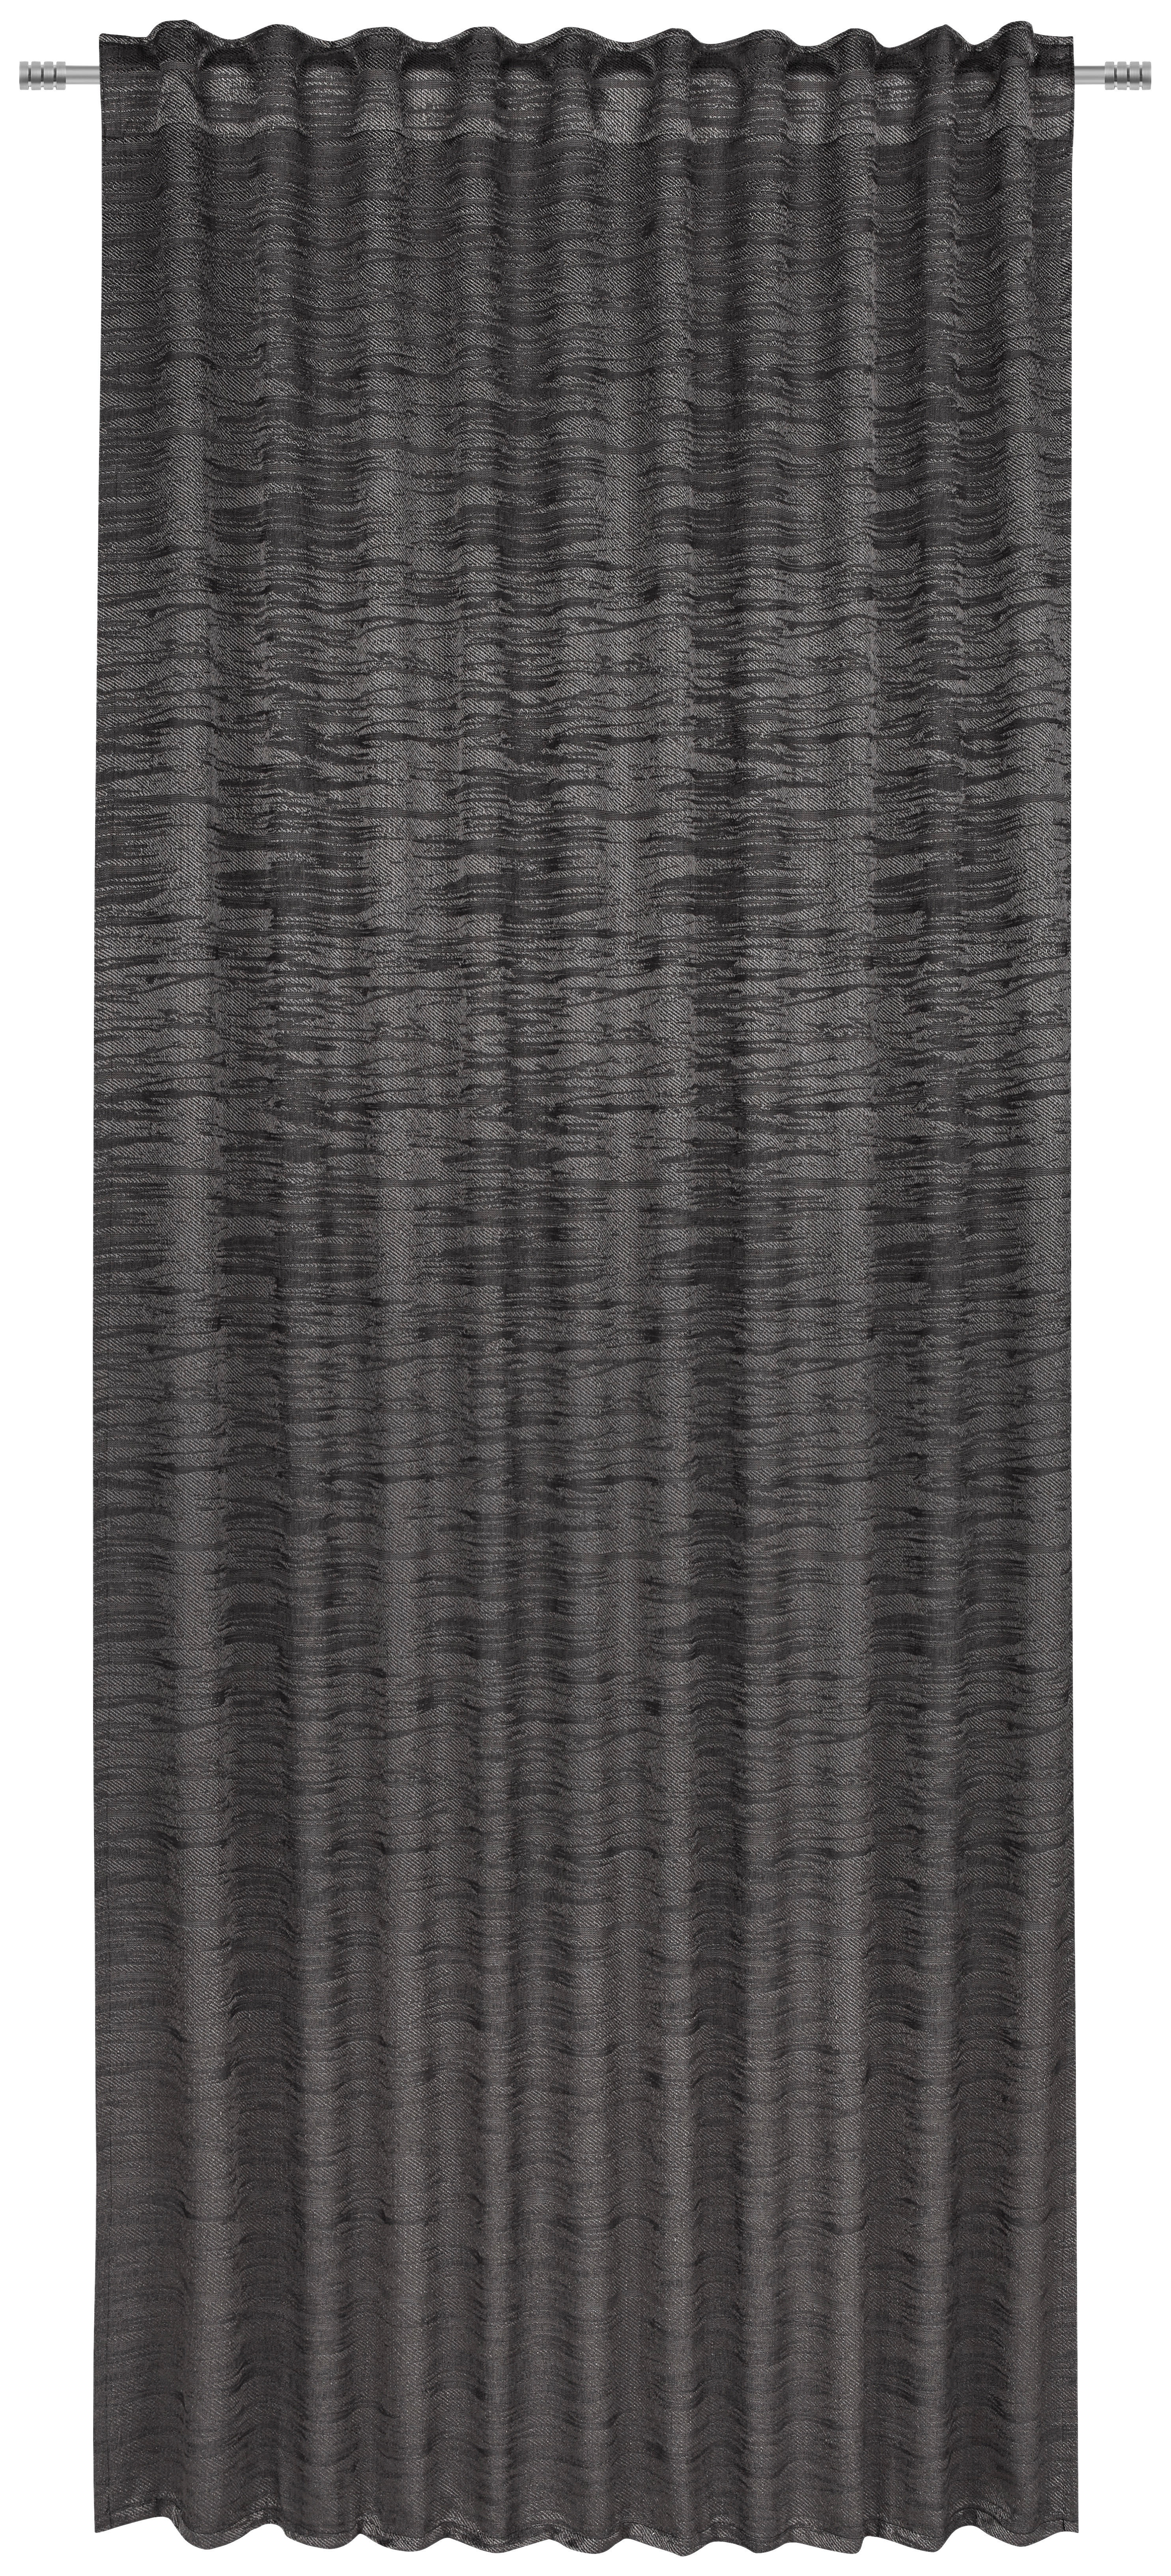 ZÁVES, nepriehľadné, 140/245 cm - antracitová, Konventionell, textil (140/245cm) - Esposa